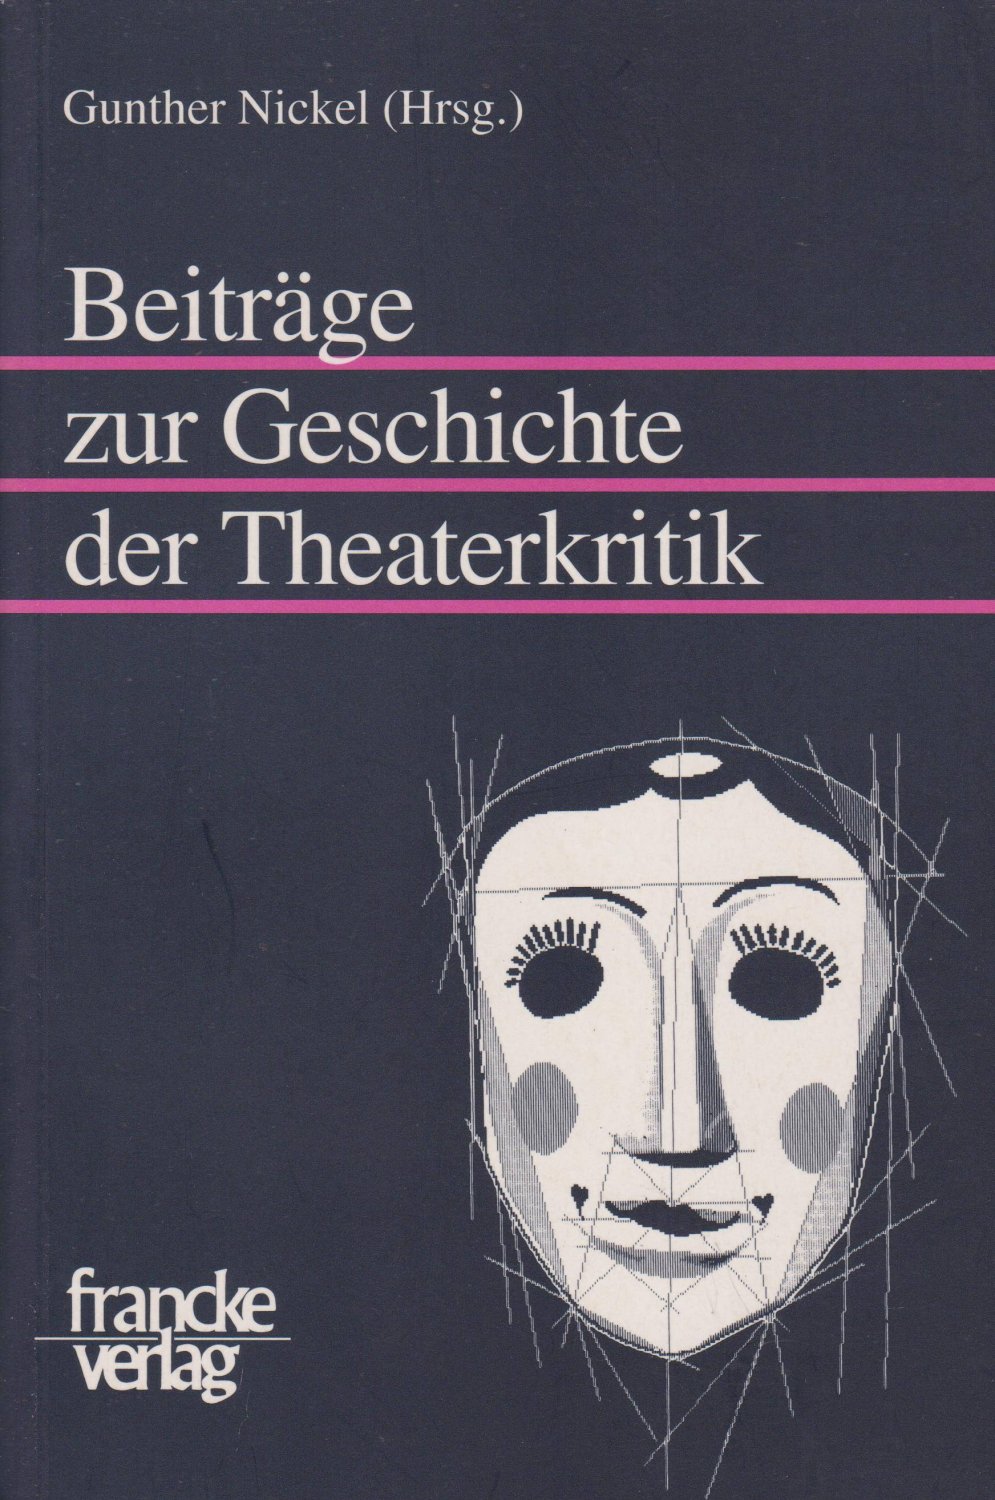 NICKEL, Gunther (Hrsg.):  Beiträge zur Geschichte der Theaterkritik. 